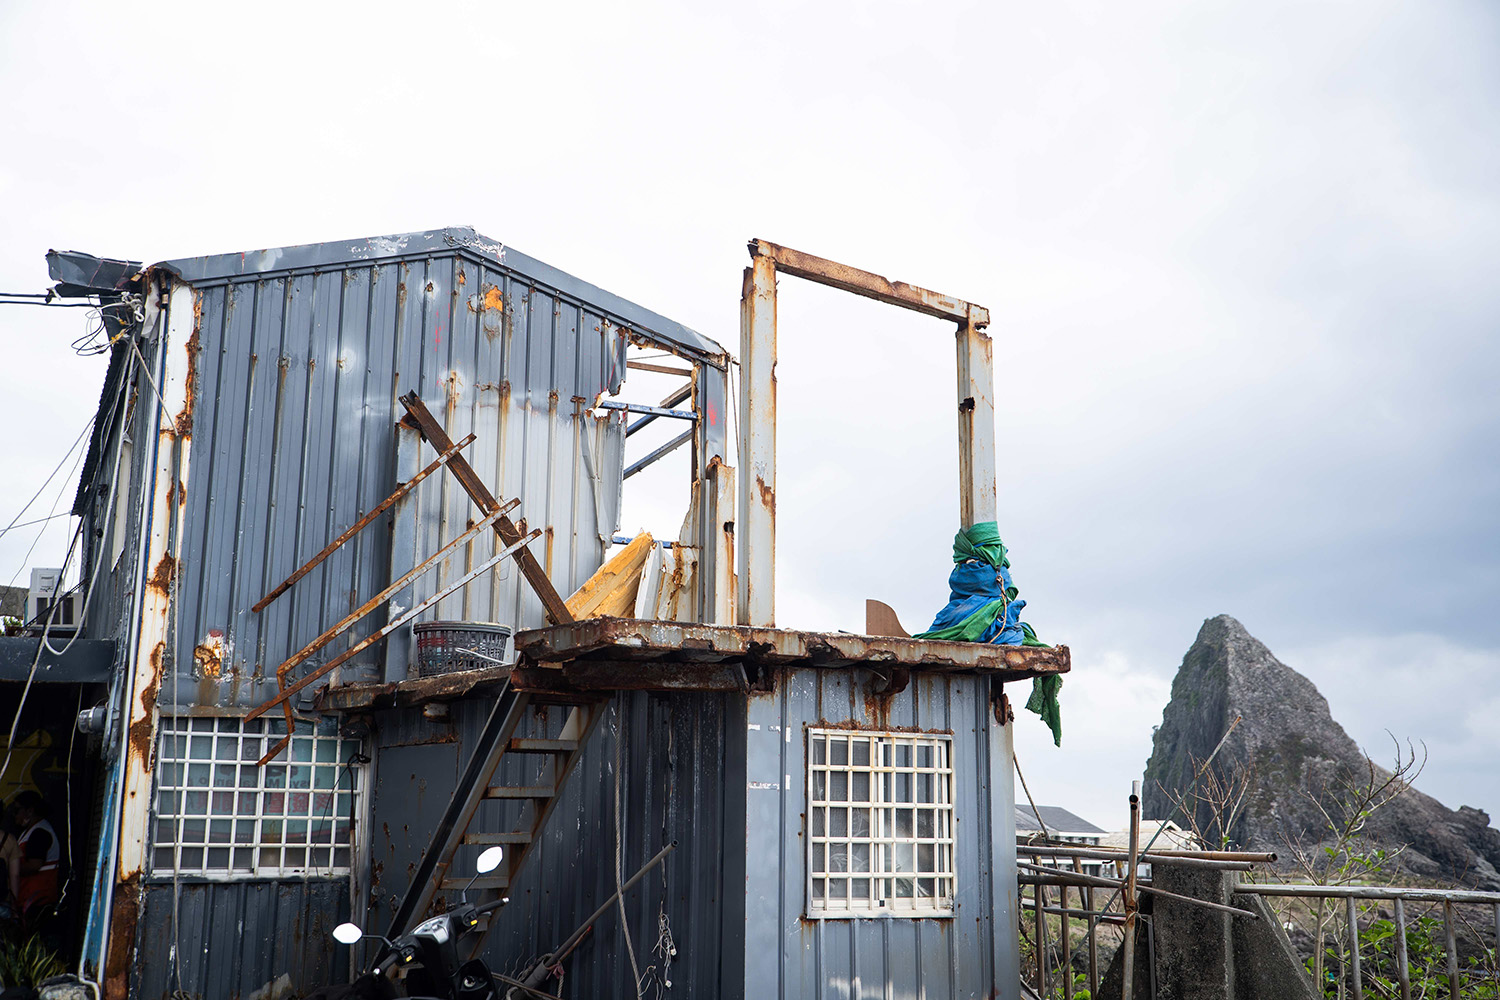 自10月4日小犬颱風強襲蘭嶼，轉眼災後近一個月，遭破壞的房舍殘骸仍在島上隨處可見 (台灣世界展望會提供)